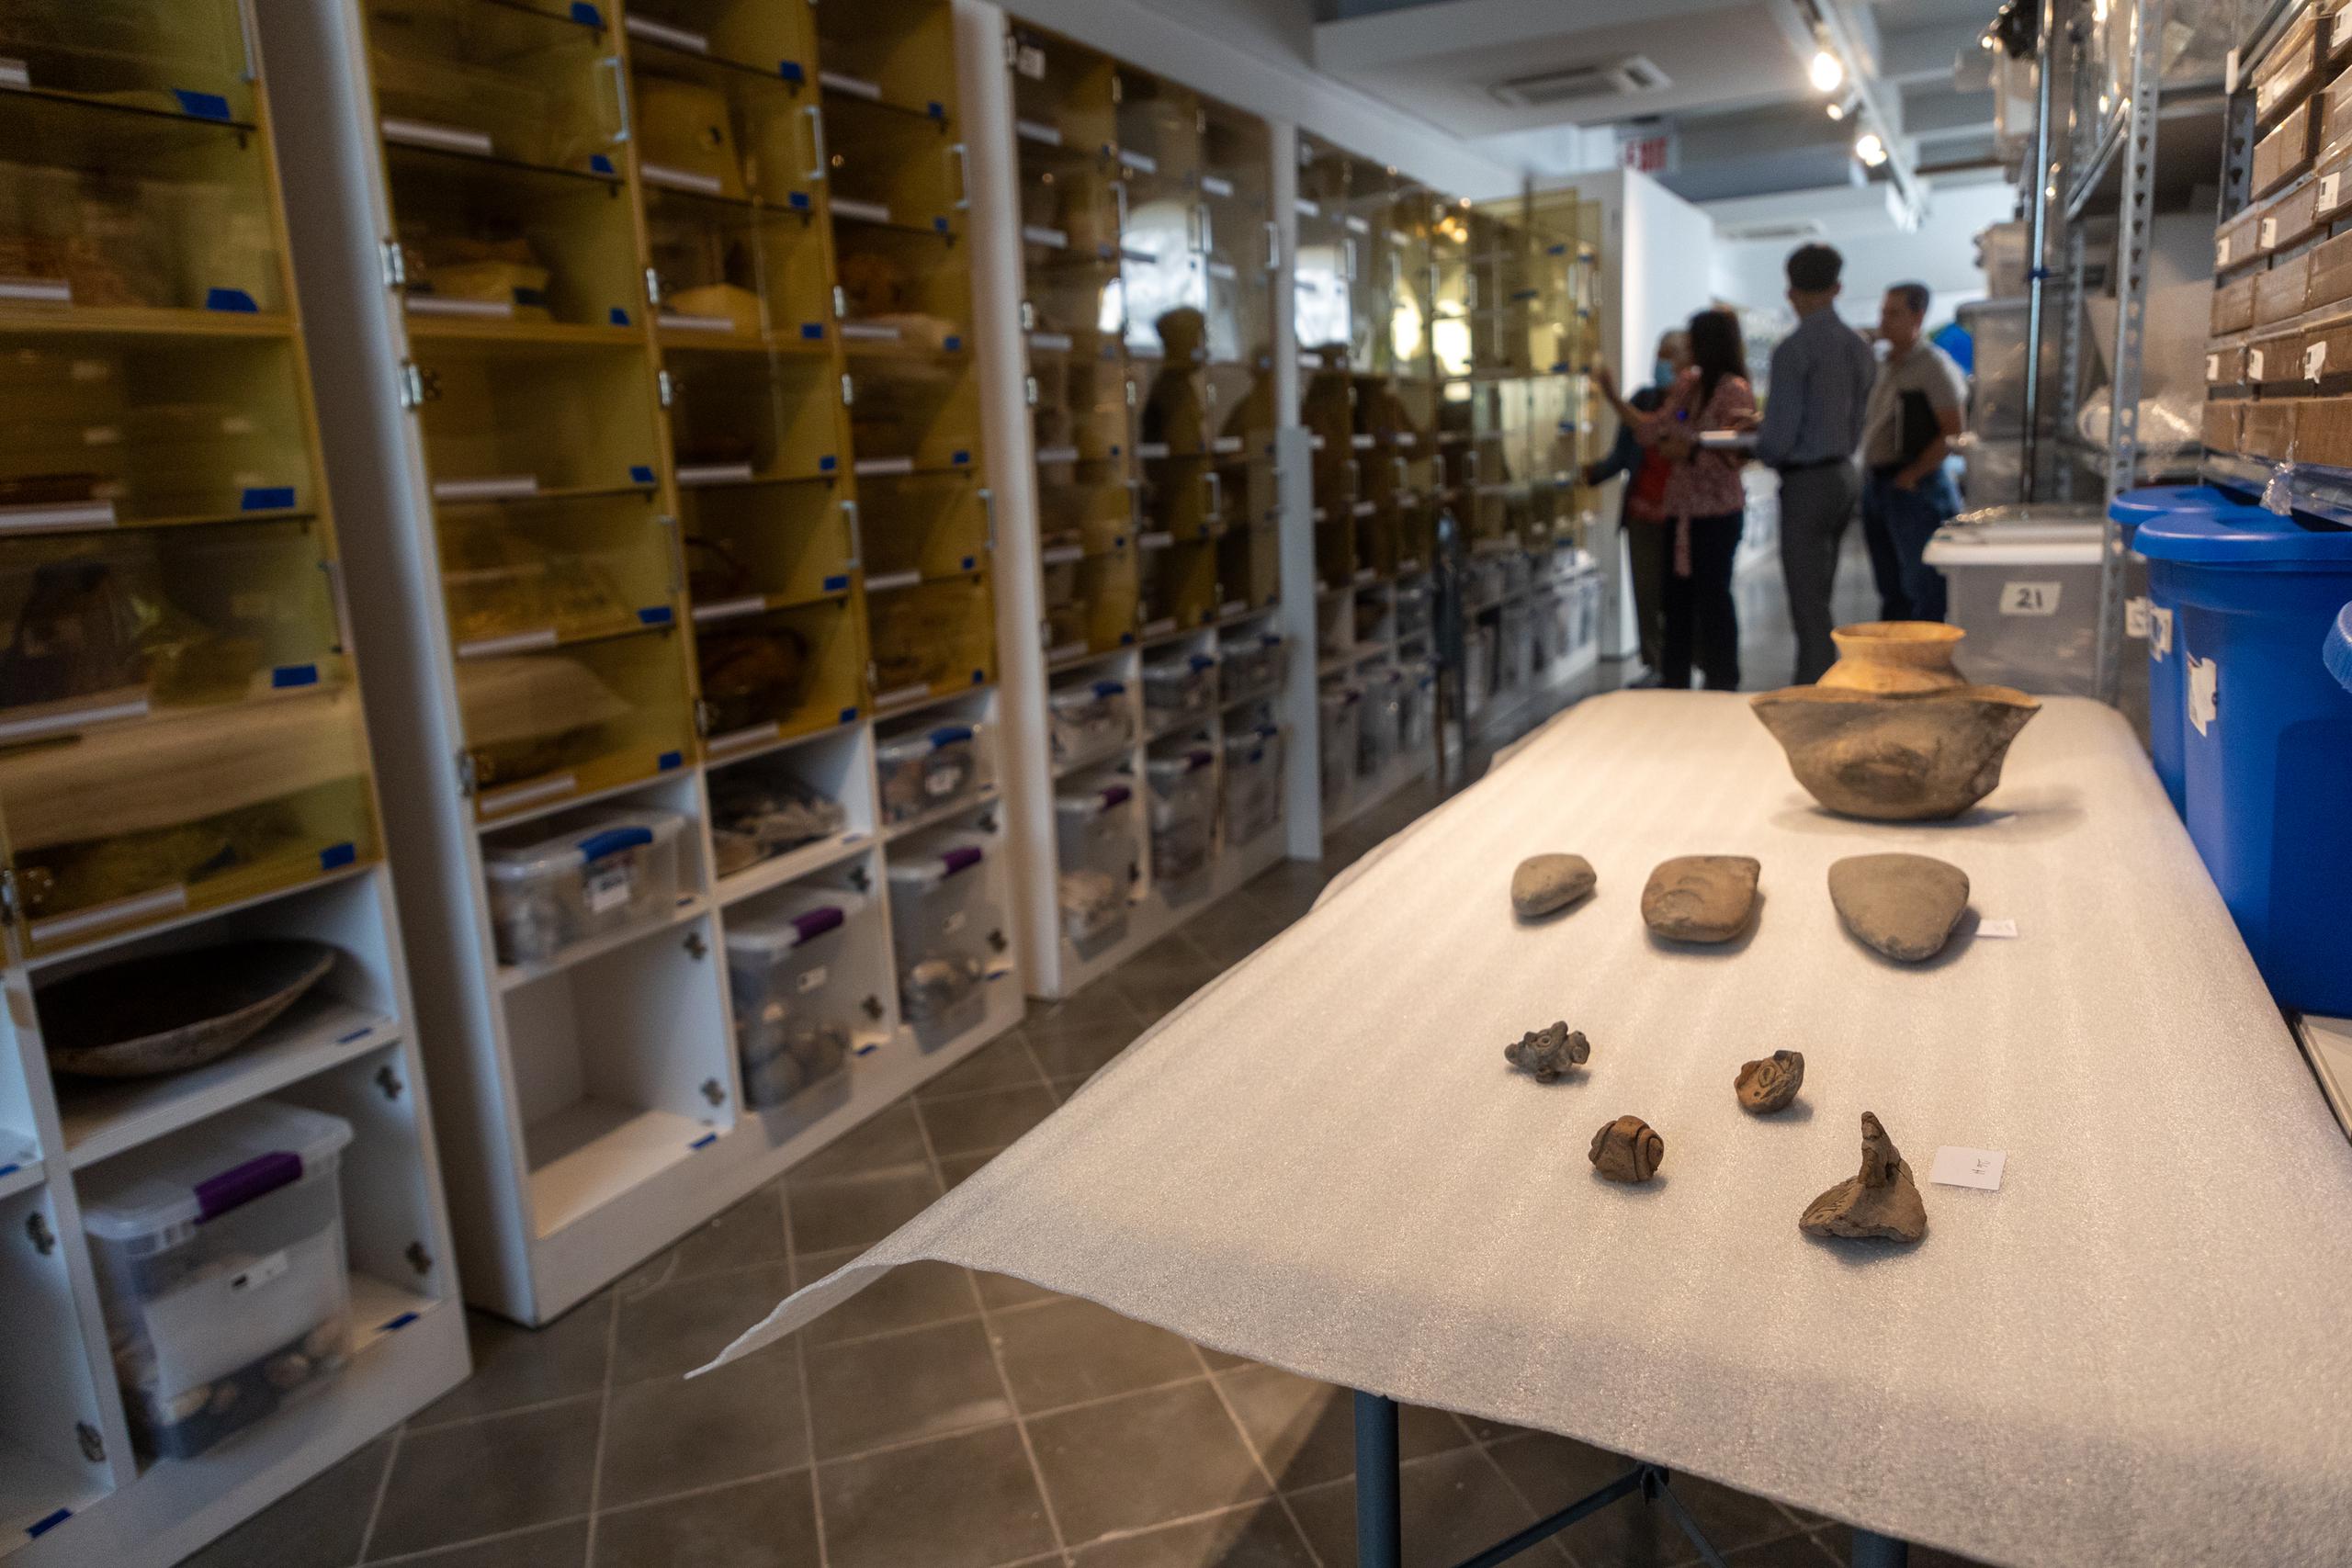 La inmensa colección se encuentra en proceso de organización en un área del sótano del museo.